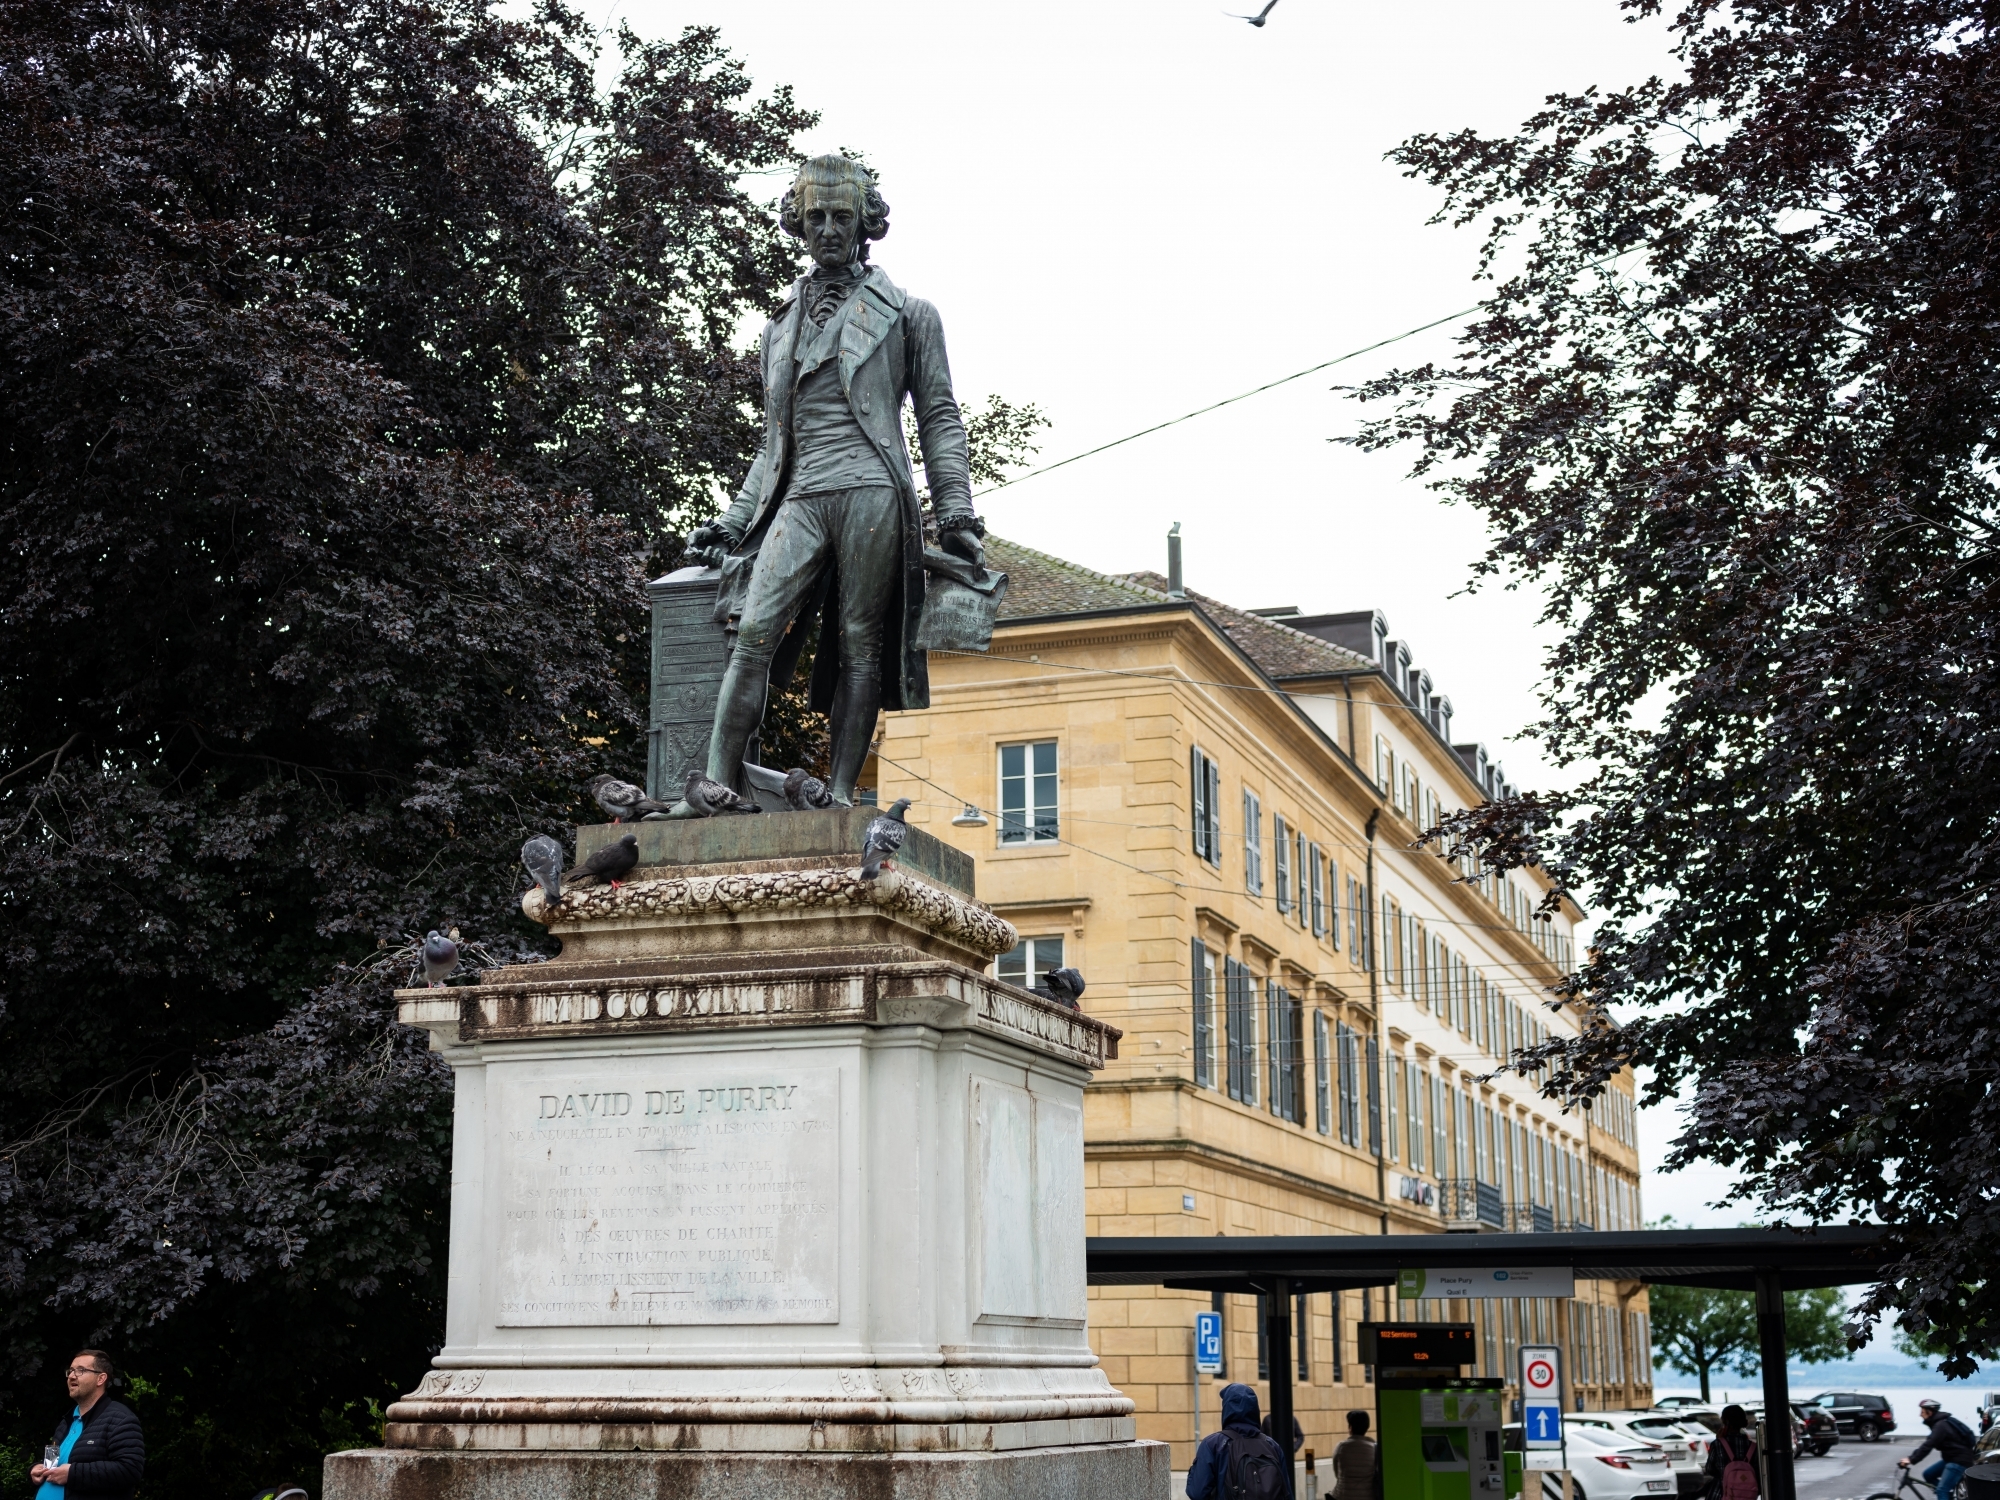 La statue de David de Pury a été érigée en 1855.